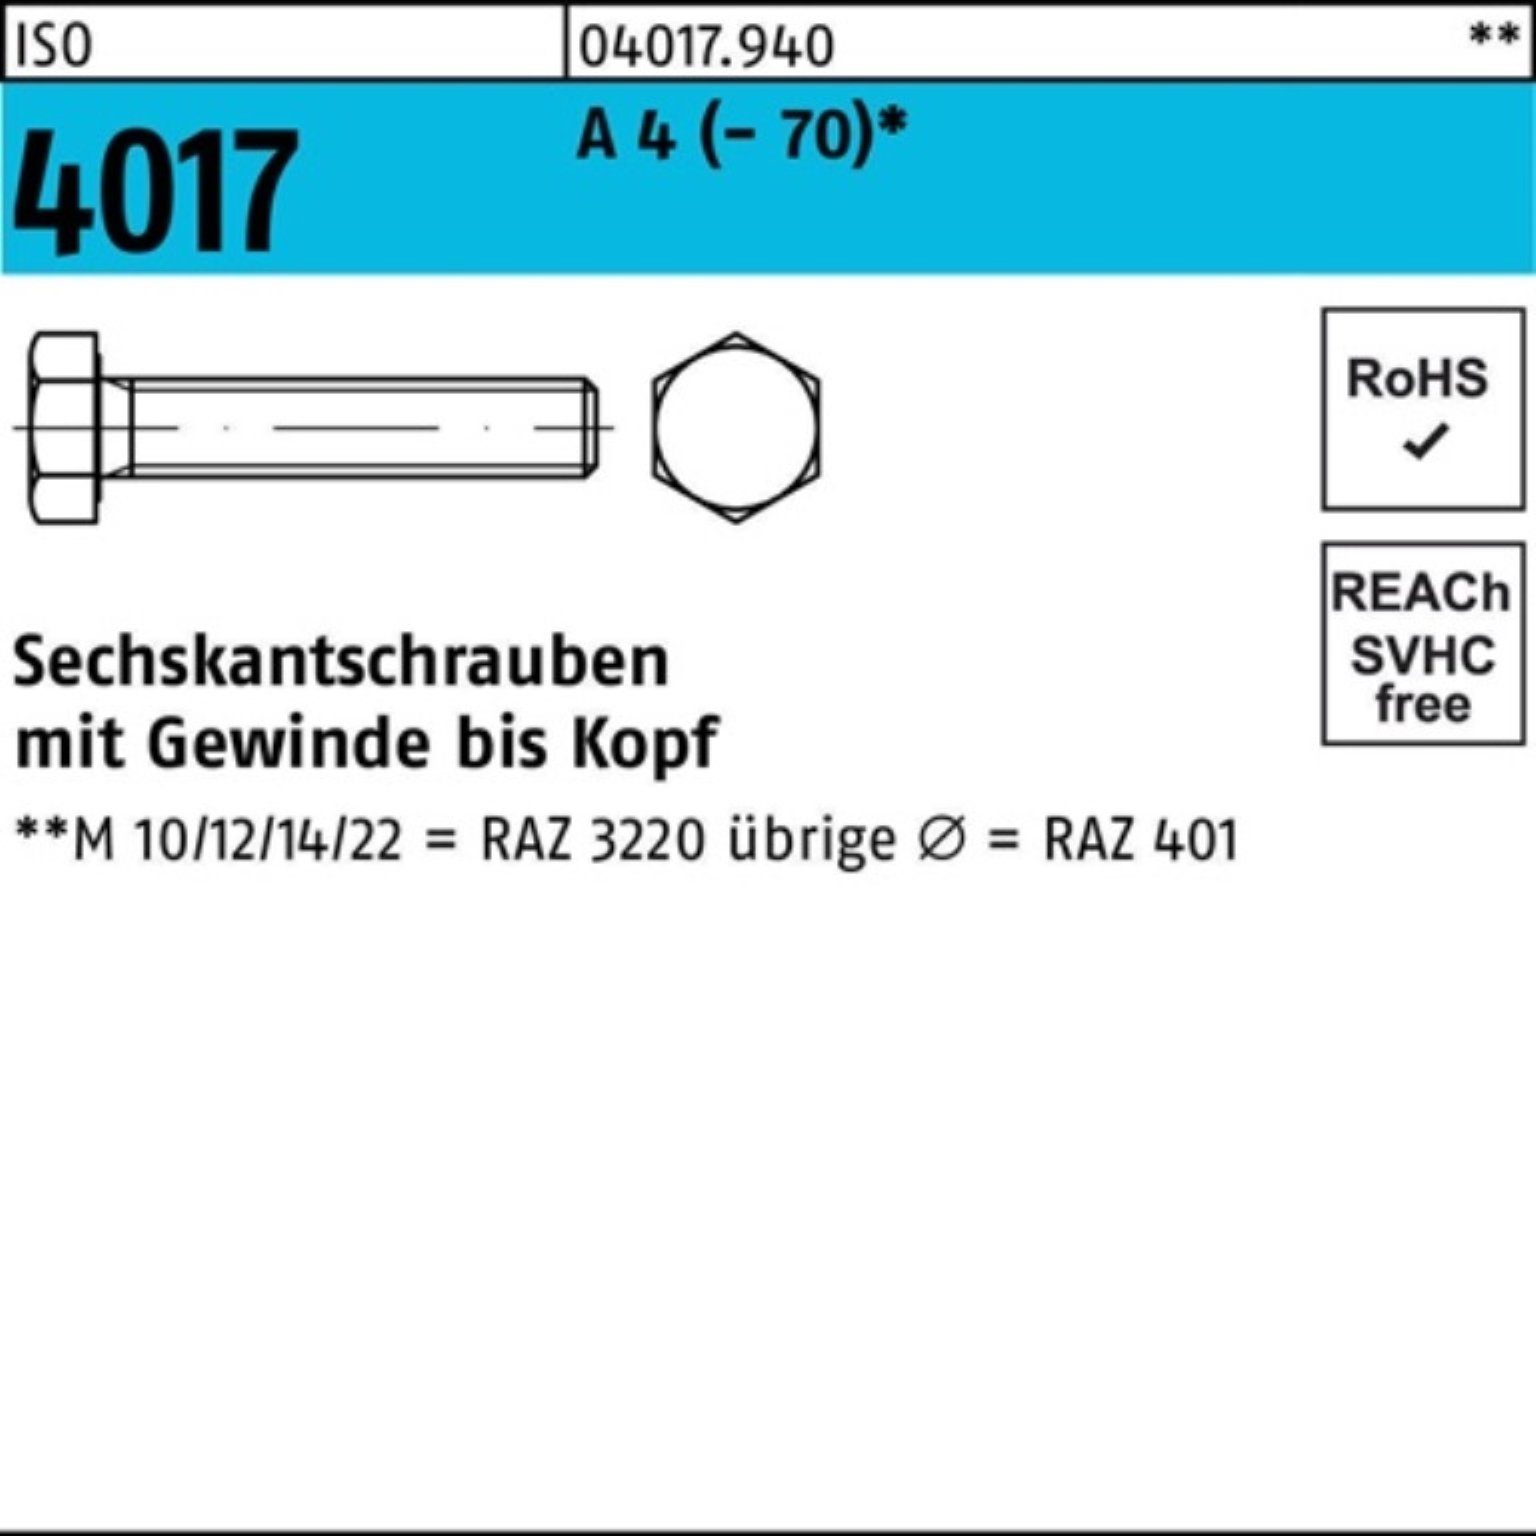 Bufab Sechskantschraube 200er Pack Sechskantschraube ISO 4017 VG M5x 30 A 4 (70) 200 Stück | Schrauben